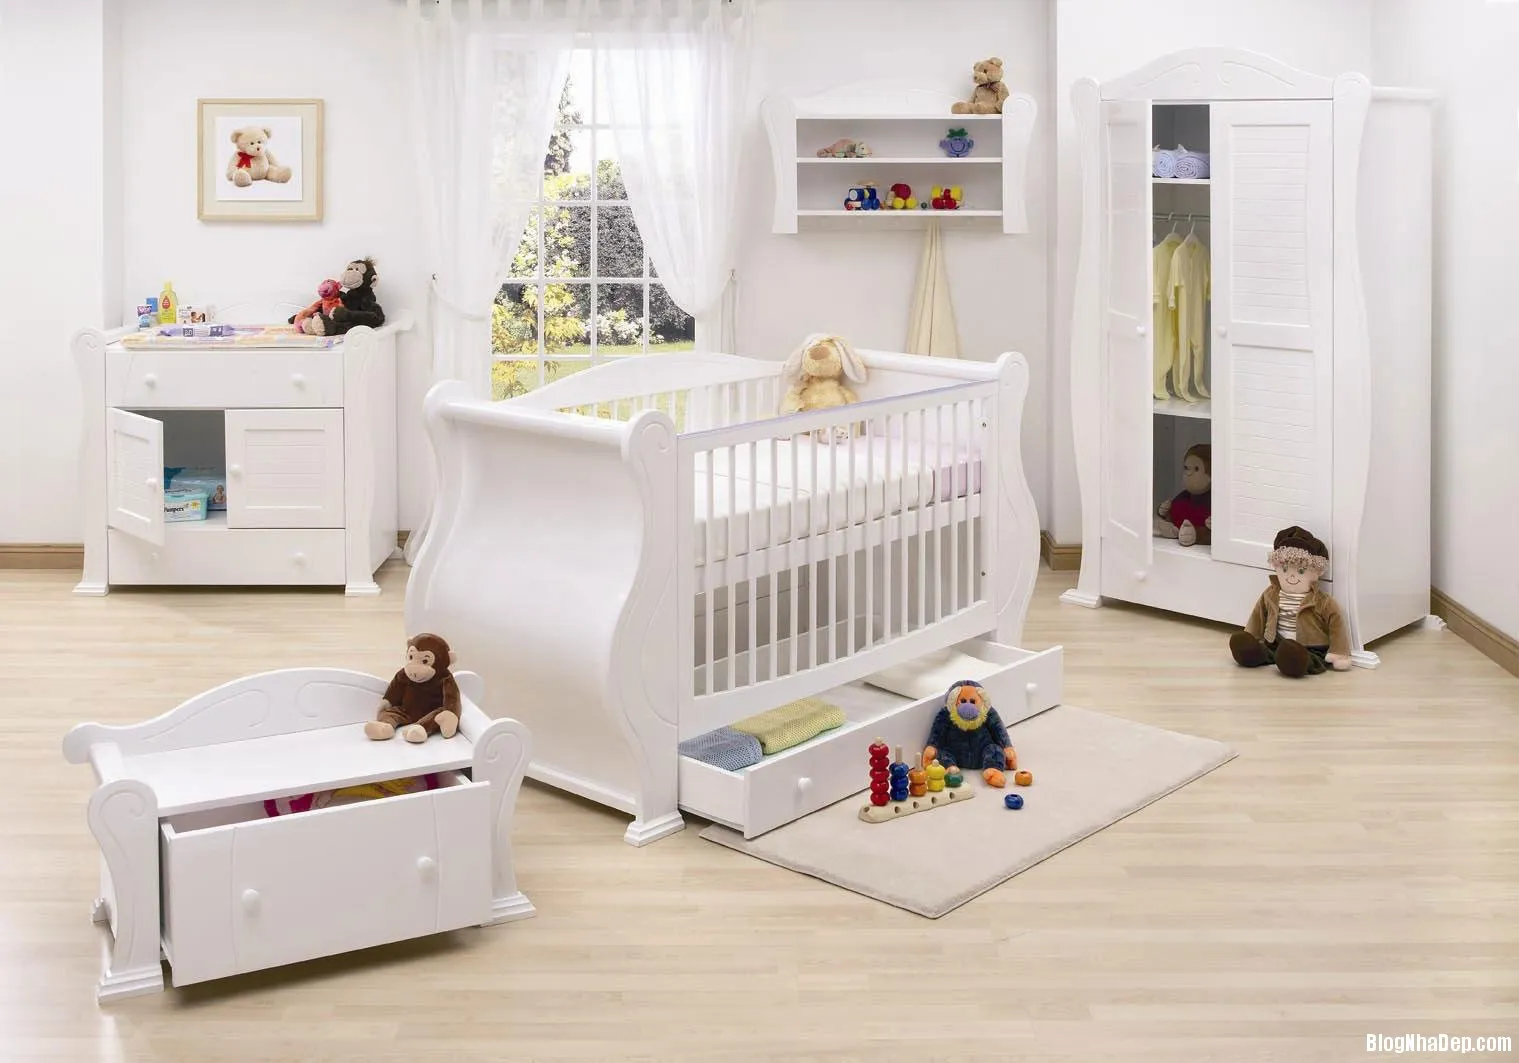 10 Kiểu thiết kế phòng đáng yêu cho bé sơ sinh